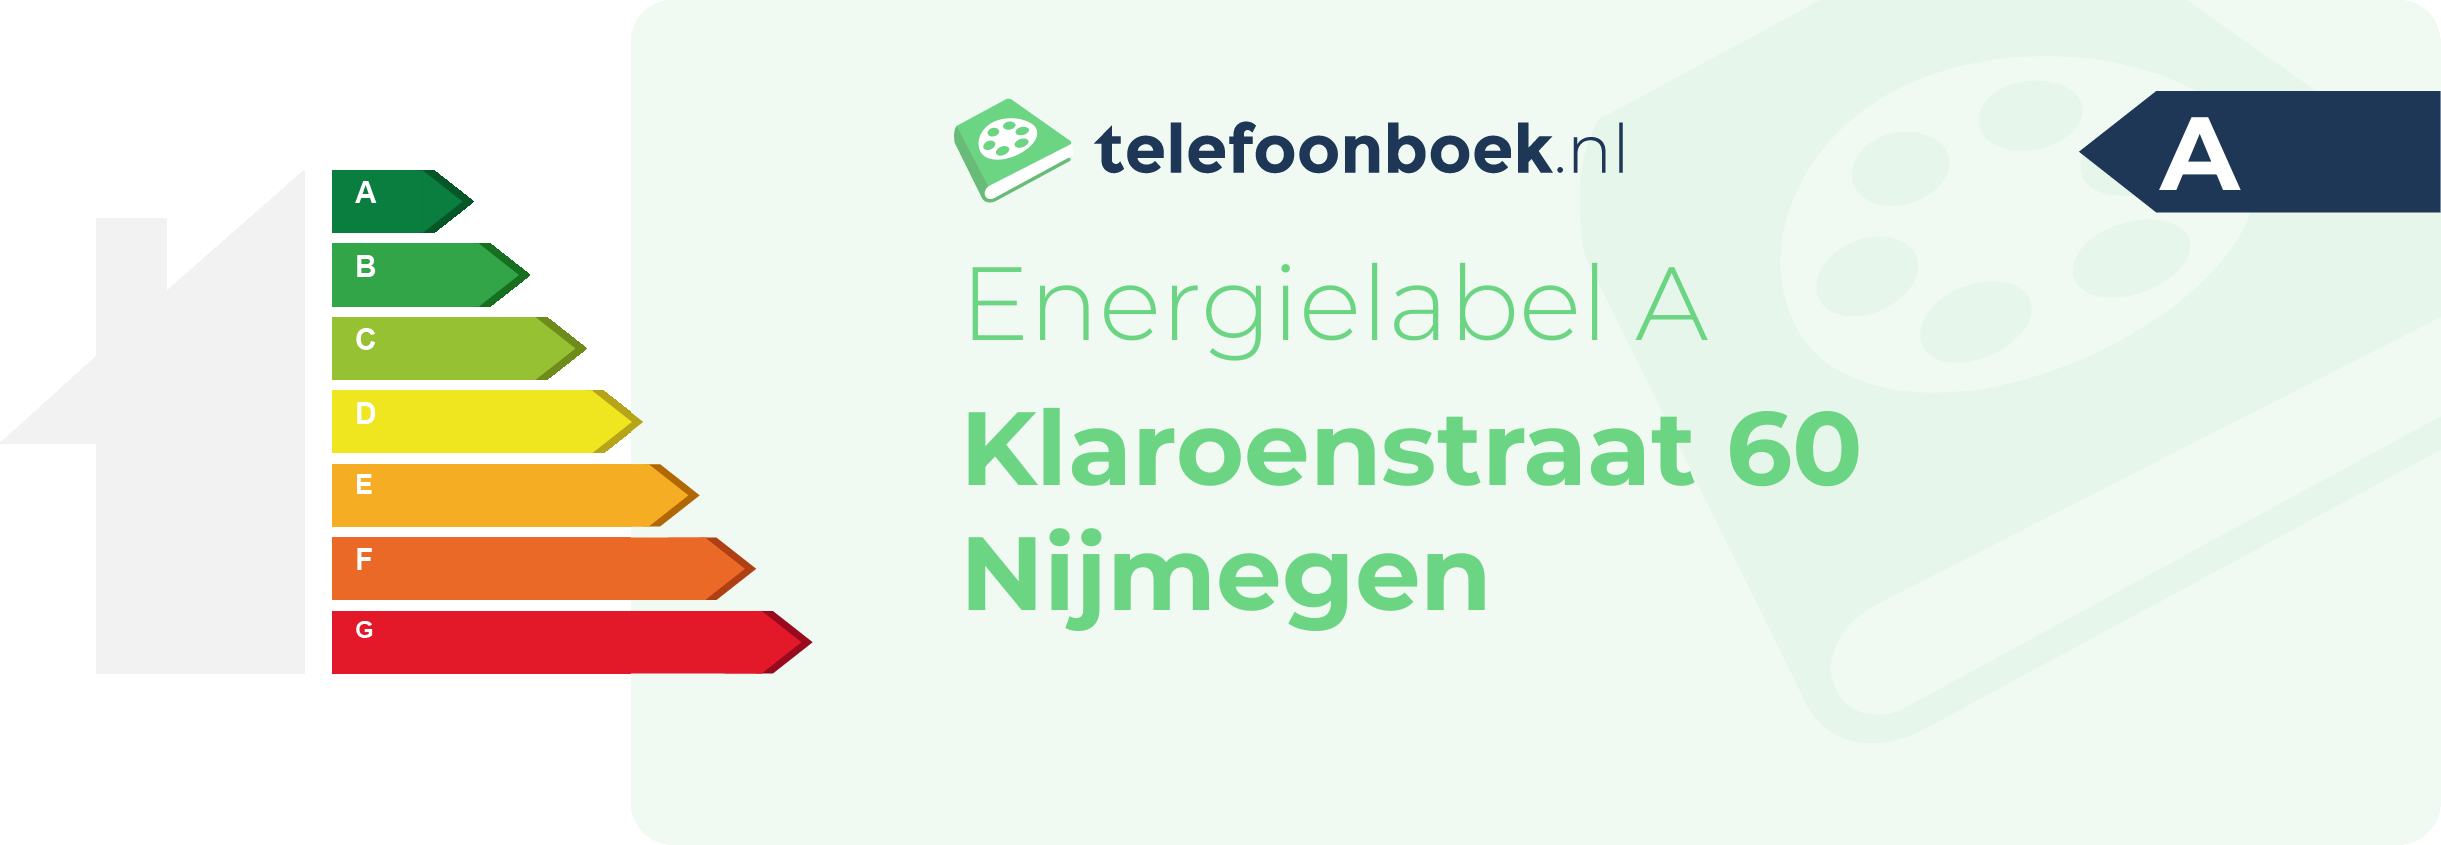 Energielabel Klaroenstraat 60 Nijmegen